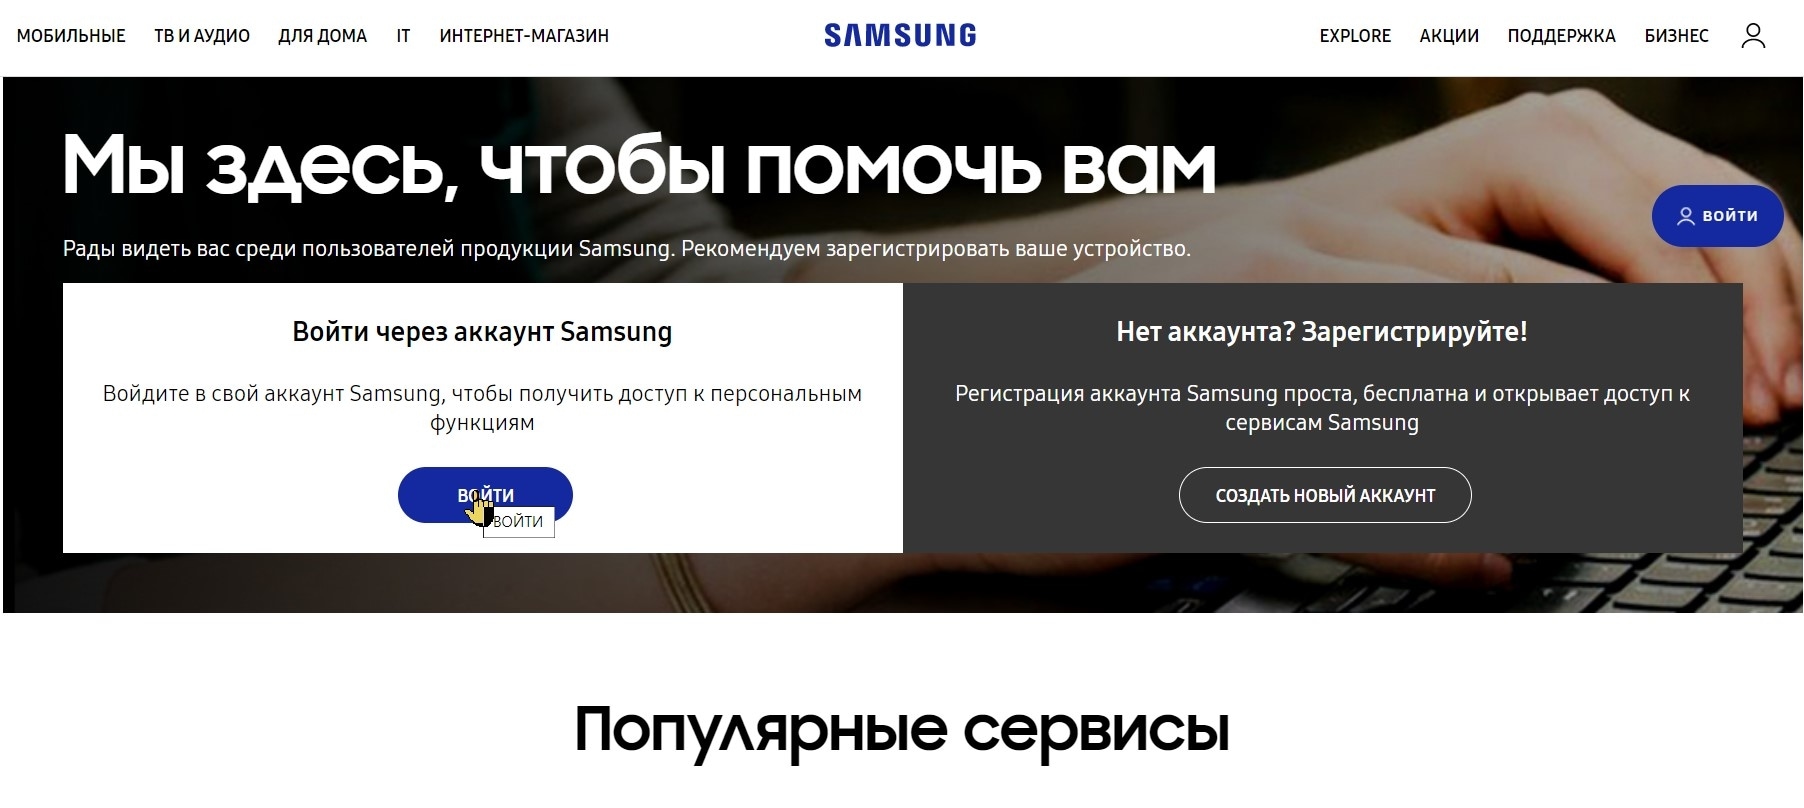 Выездной сервис Samsung. Samsung техподдержка. Служба поддержки самсунг номер телефона. Проверить самсунг на официальном сайте